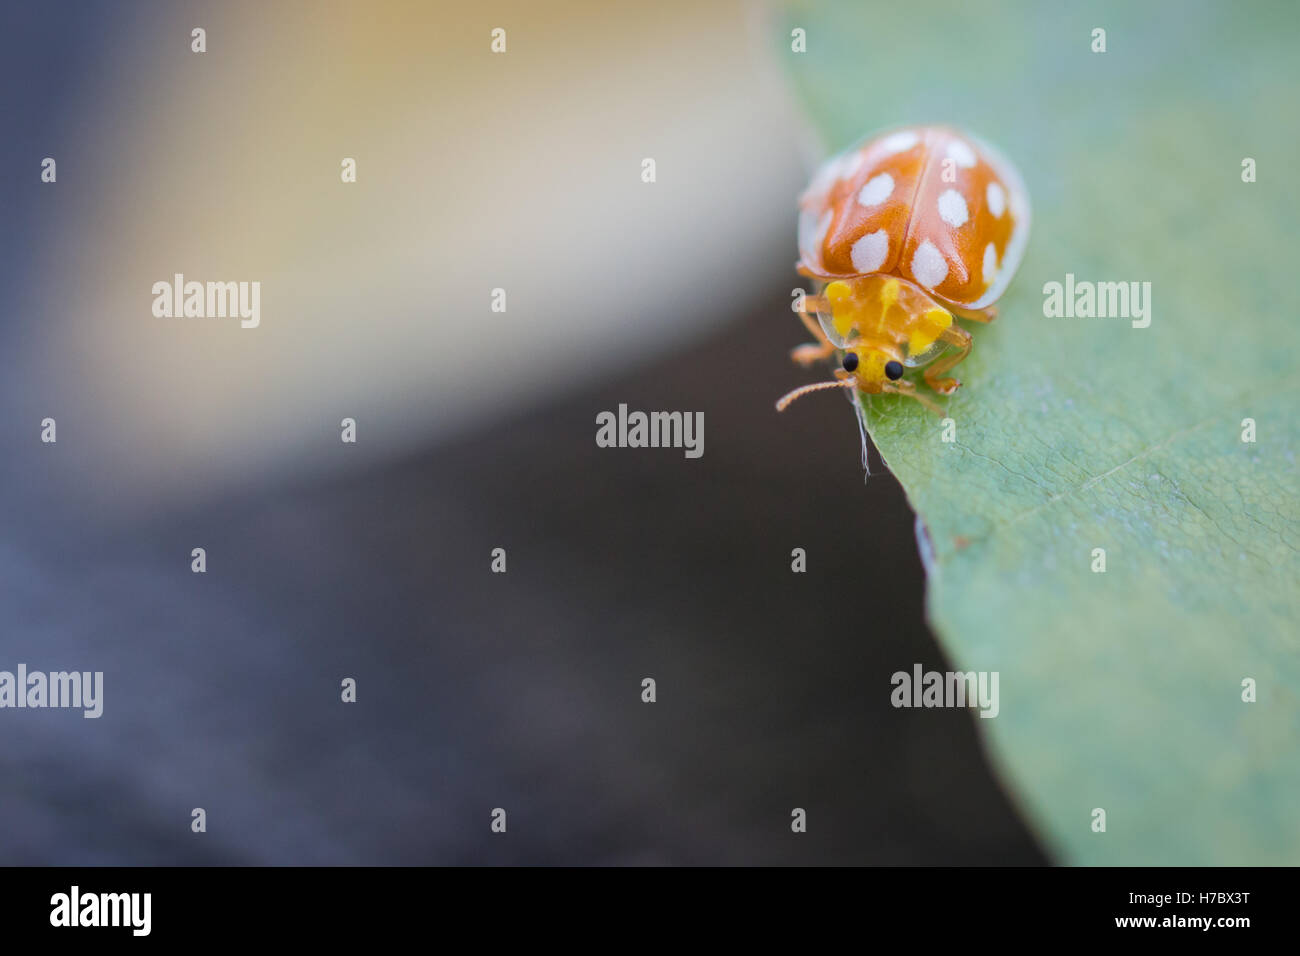 Macro image of an orange ladybug on a leaf Stock Photo